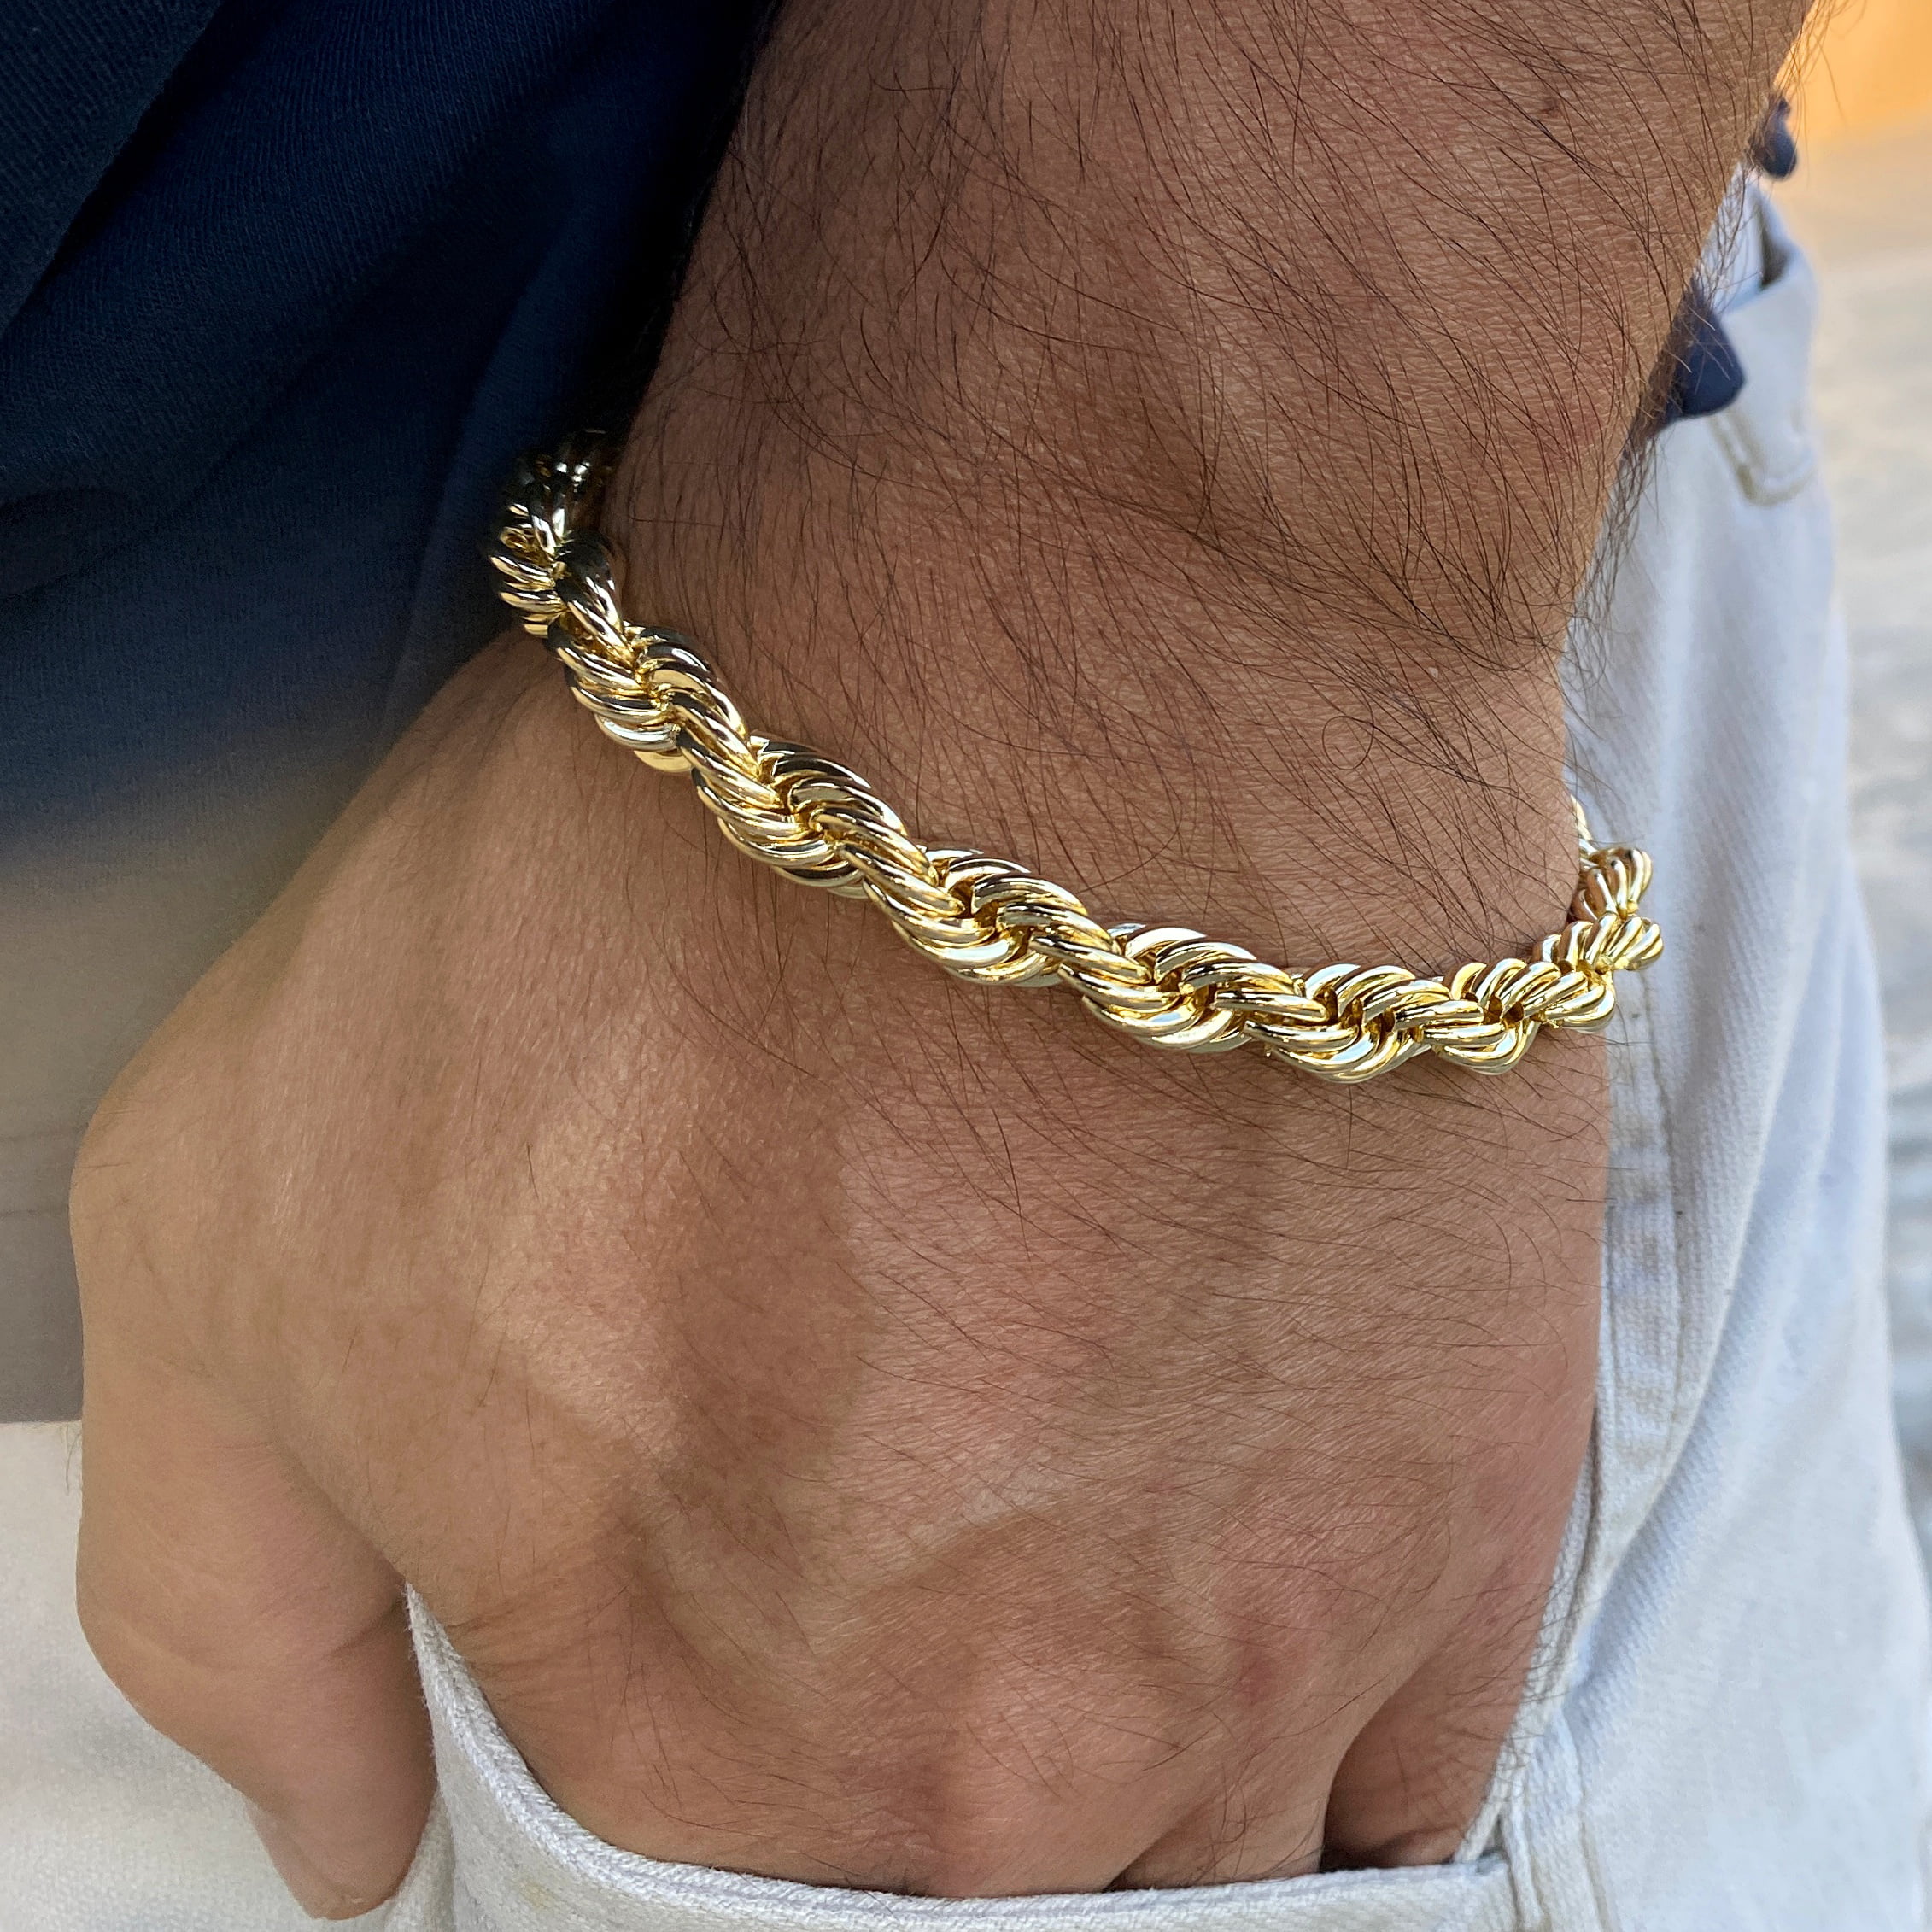 10k gold bracelet 8 inch adjustable Weight : 2.57... - Depop